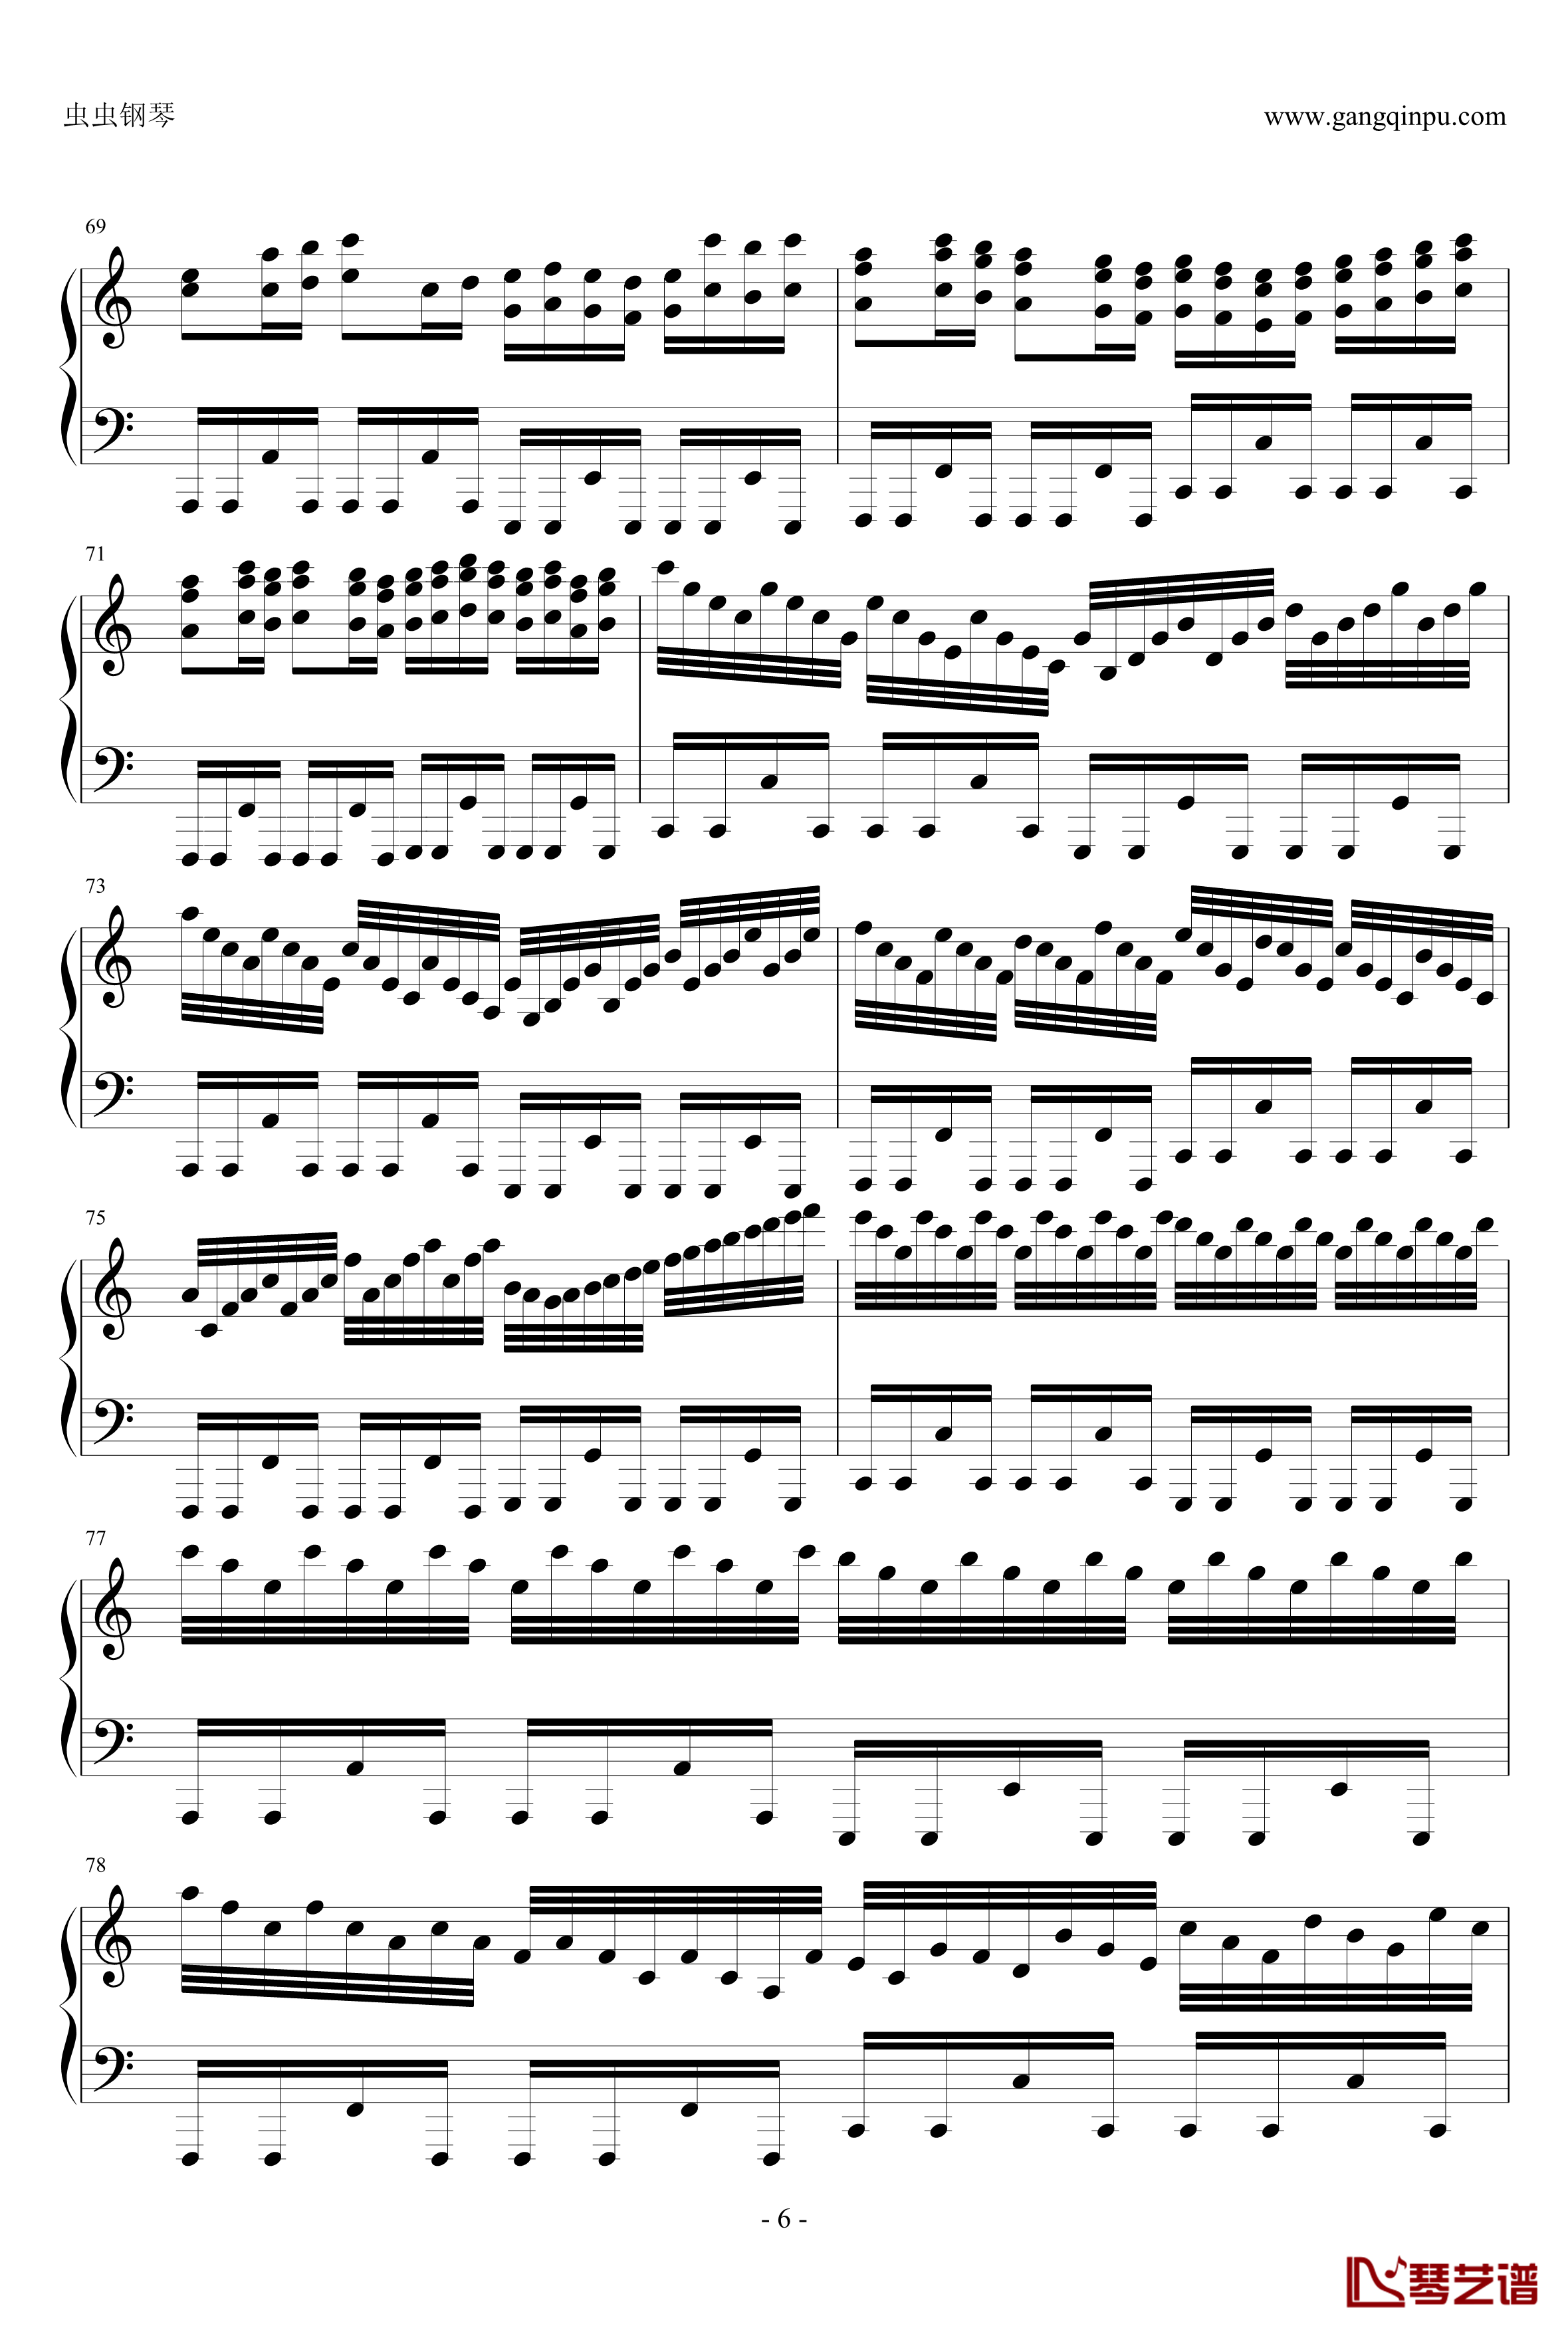 卡农疯狂摇滚版钢琴谱-约翰·巴哈贝尔6